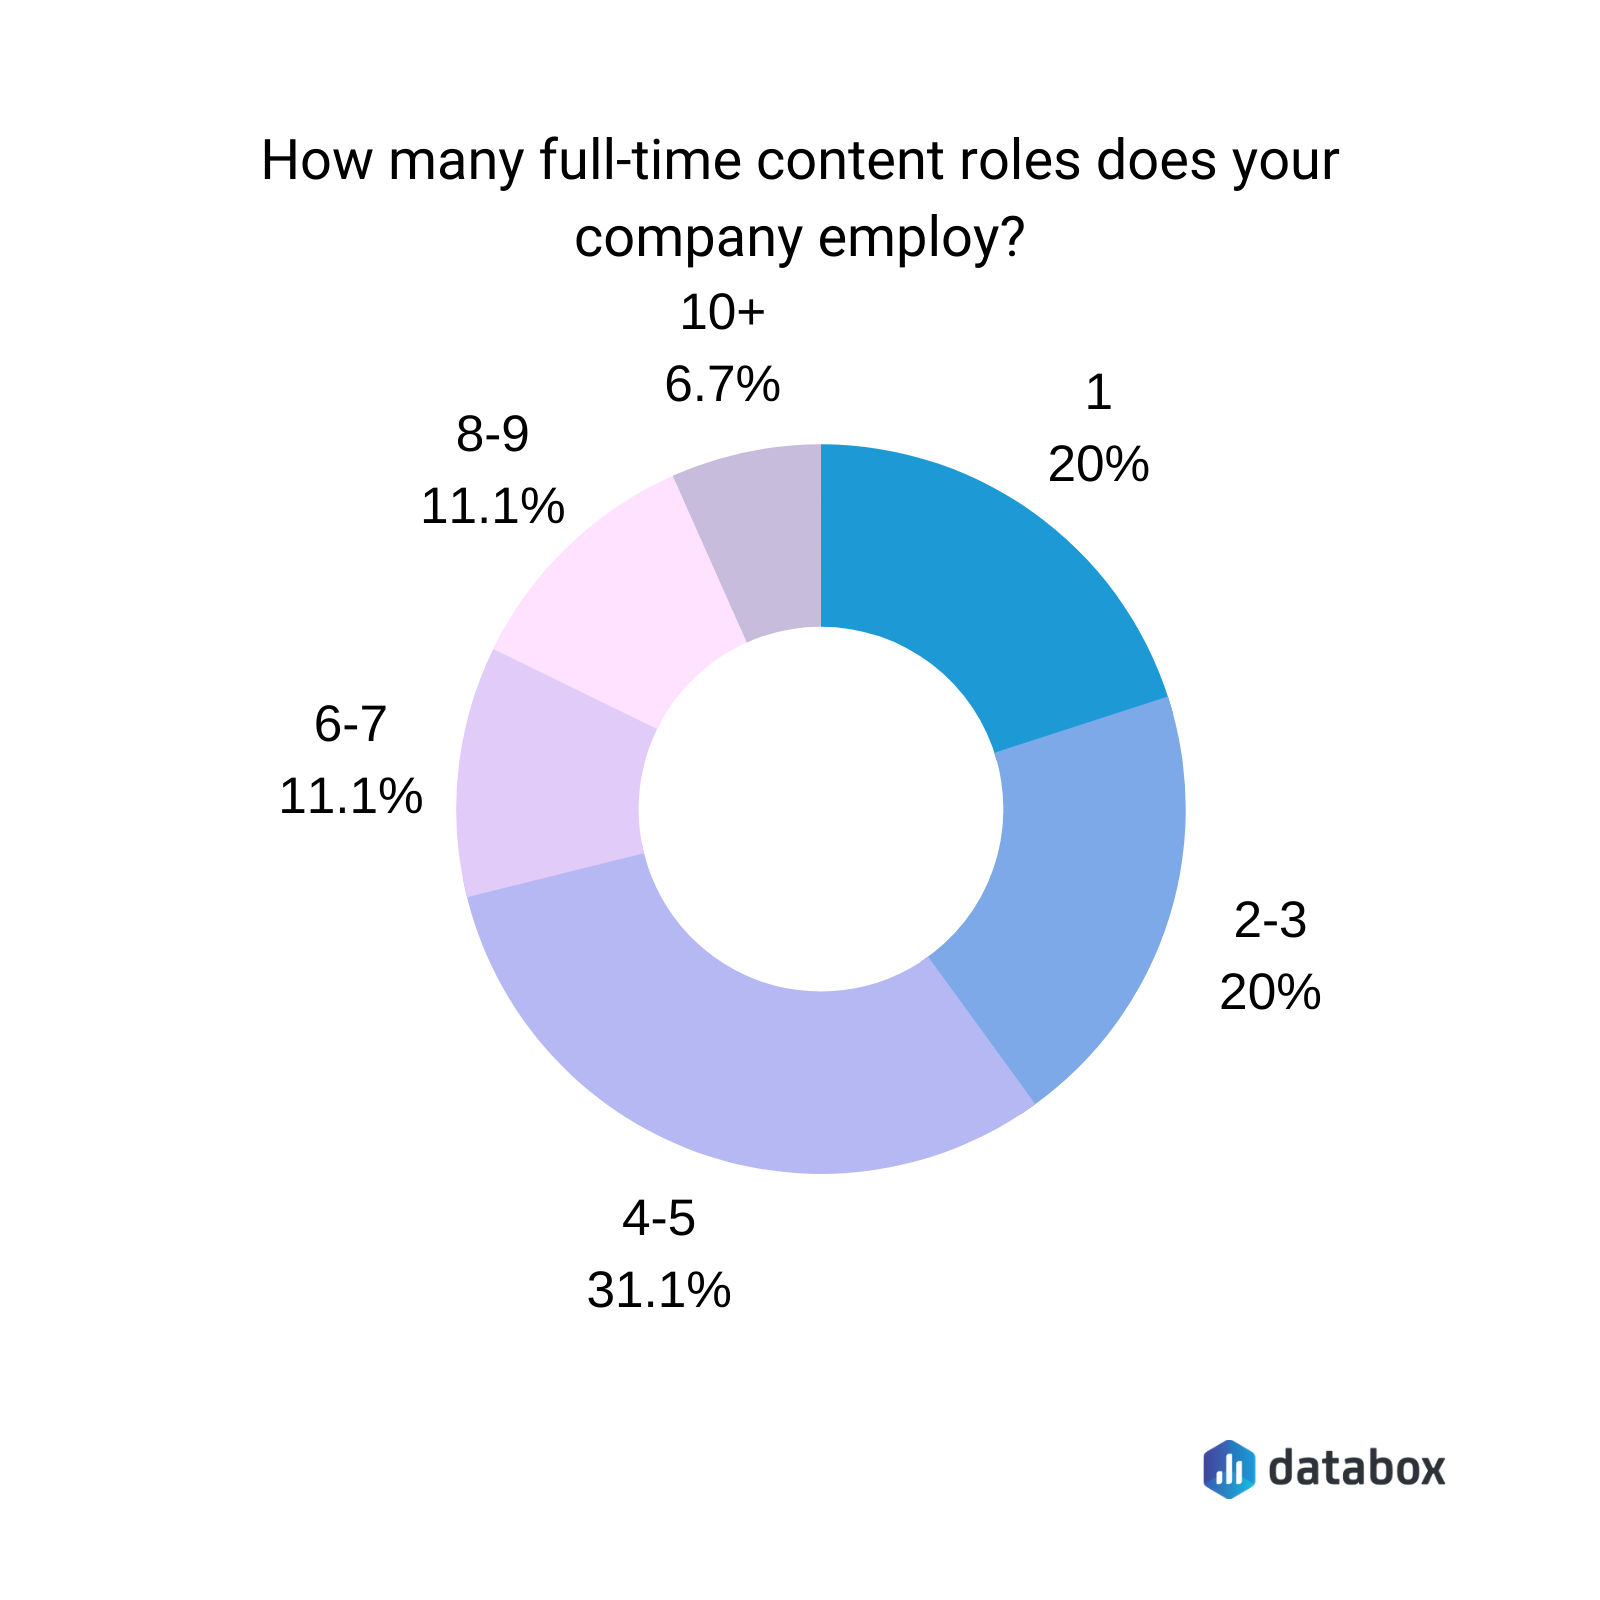 Сколько штатных сотрудников по контенту работает в вашей компании?